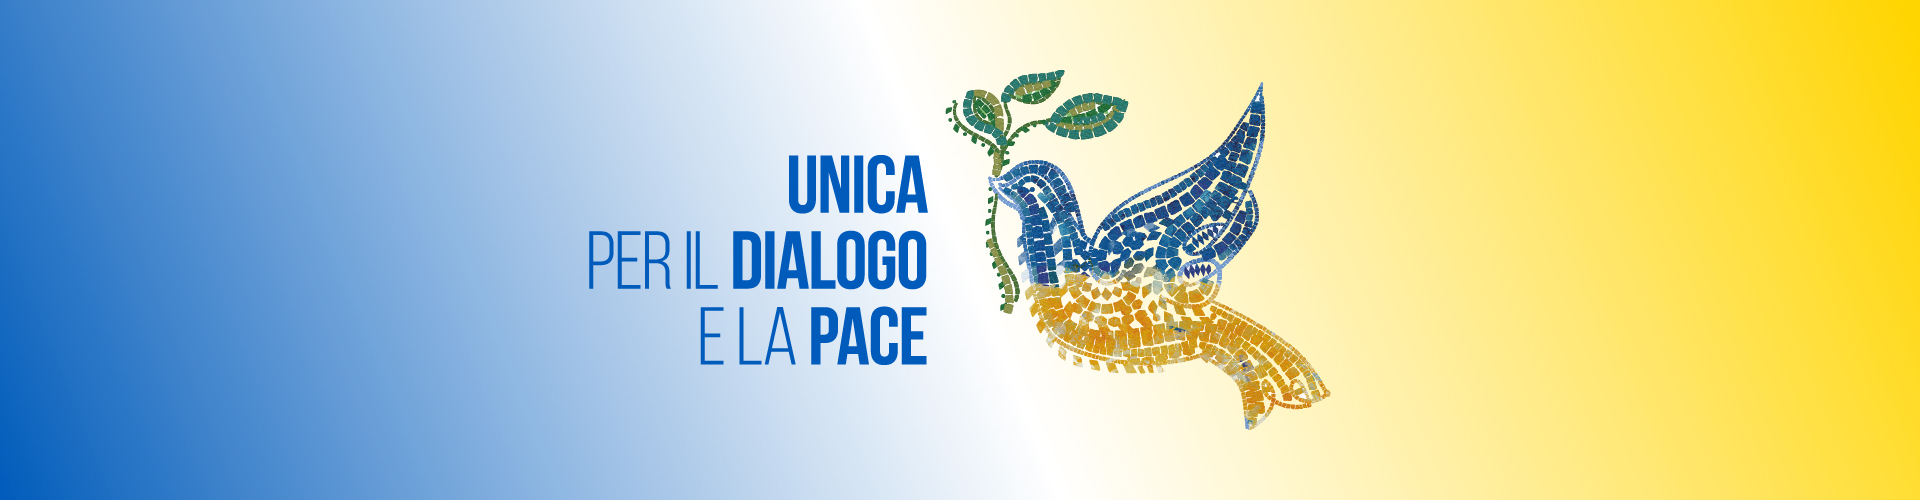 UniCA per il dialogo e la pace